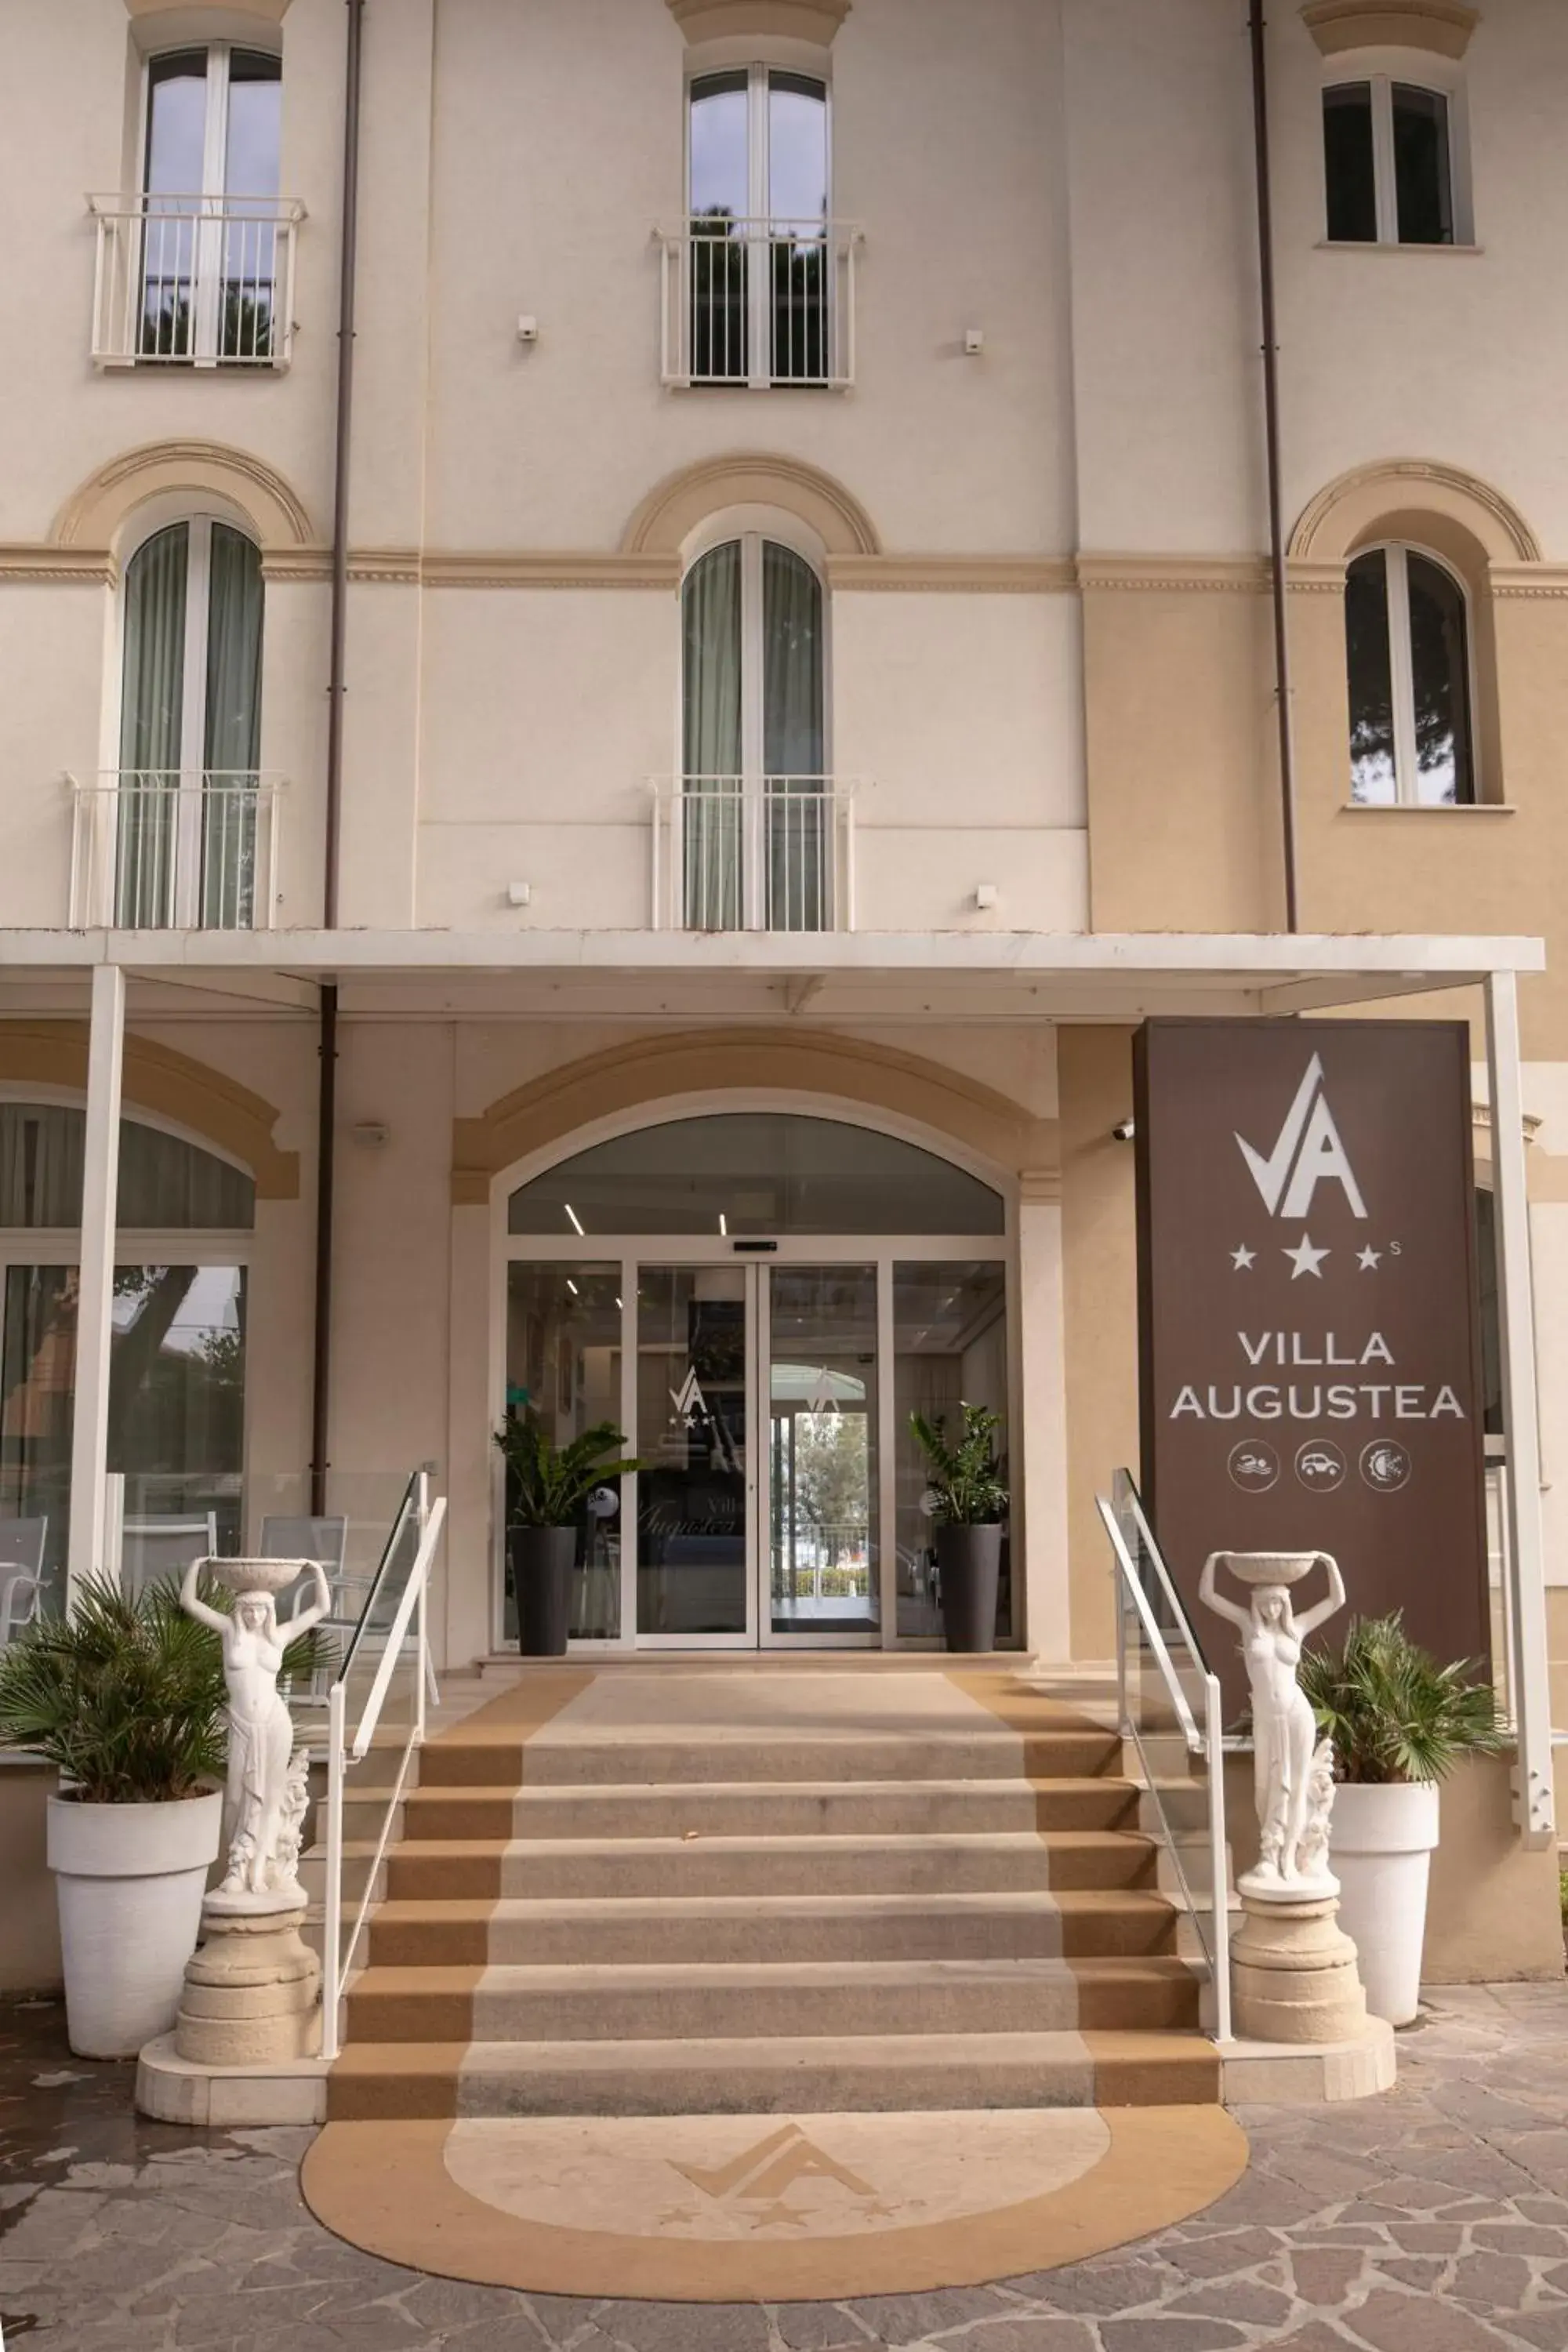 Property building in Hotel Villa Augustea